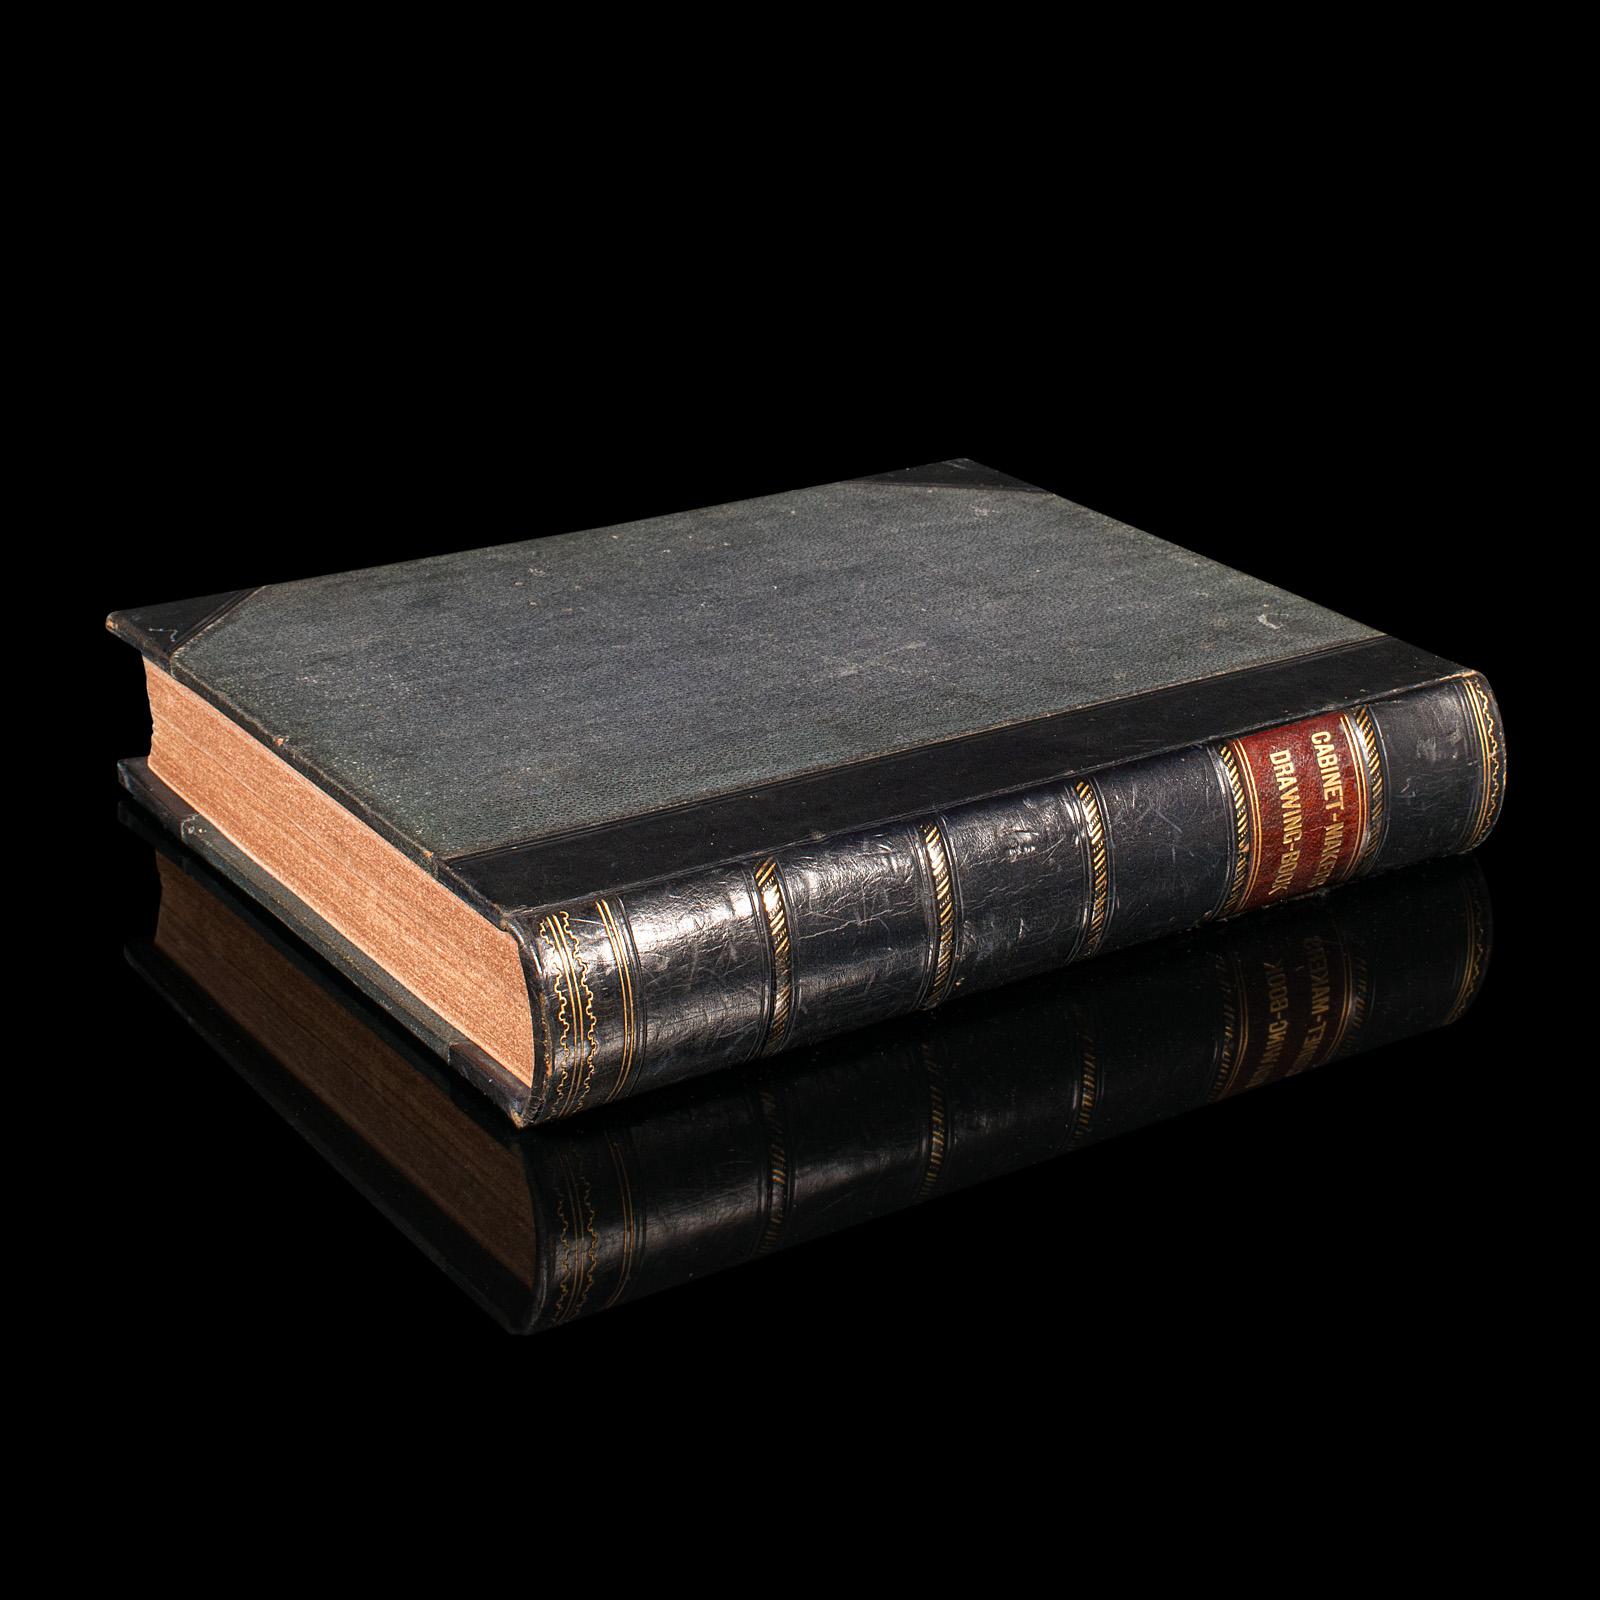 Dies ist ein antikes Exemplar des Cabinet Maker's Drawing Book von Thomas Sheraton. Ein englisches, gebundenes Nachschlagewerk aus der georgianischen Zeit, veröffentlicht 1793.

Der einflussreiche englische Möbeldesigner Thomas Sheraton (1751-1806)